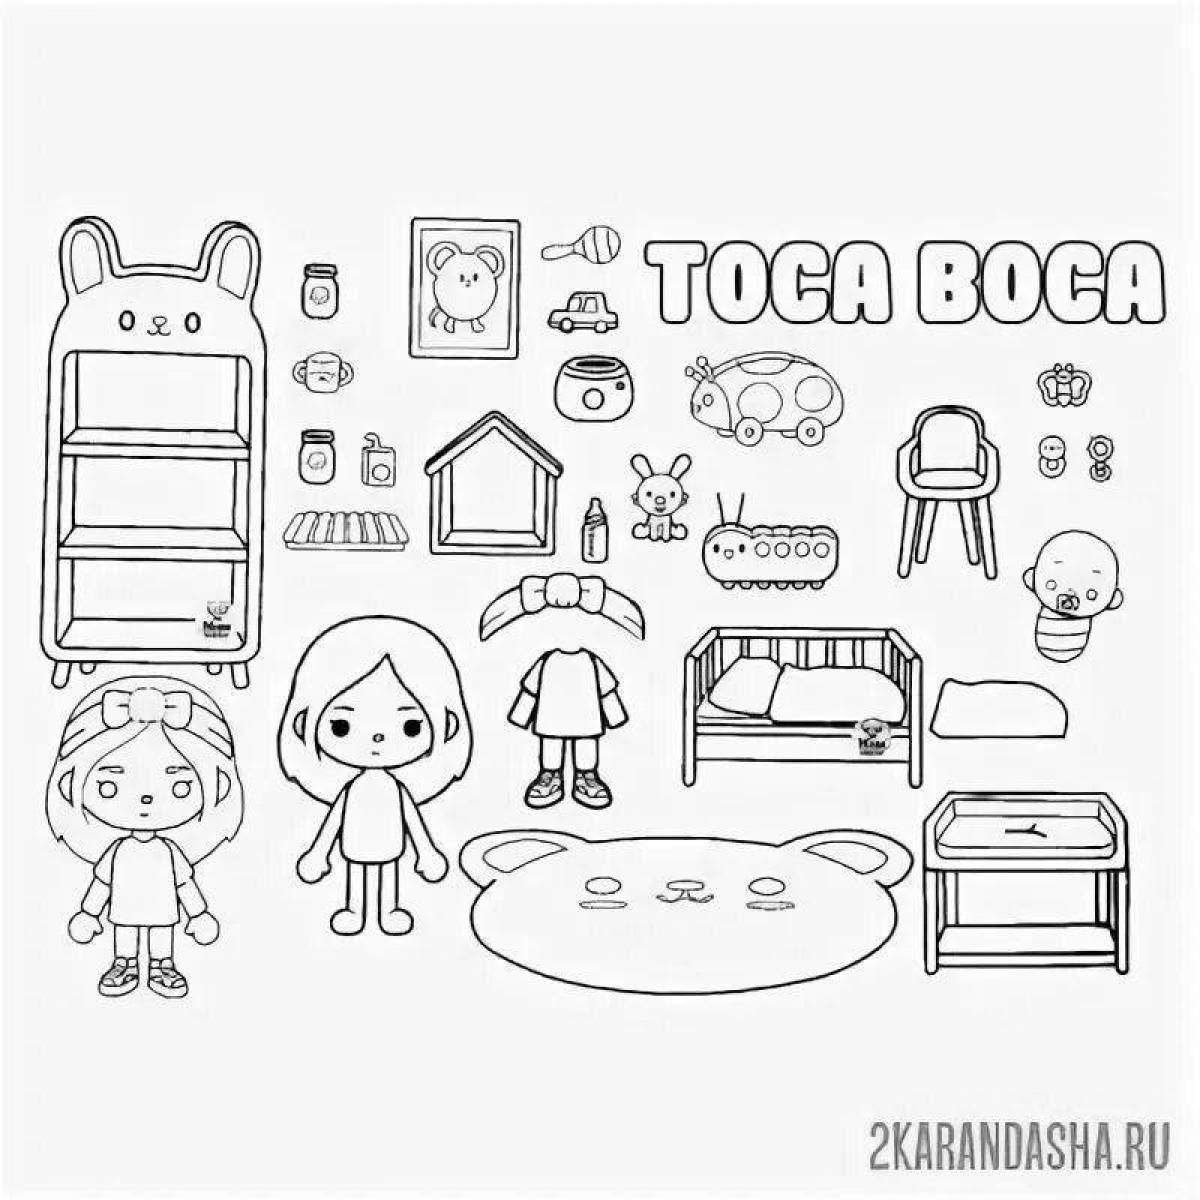 Яркая мебель toka boca